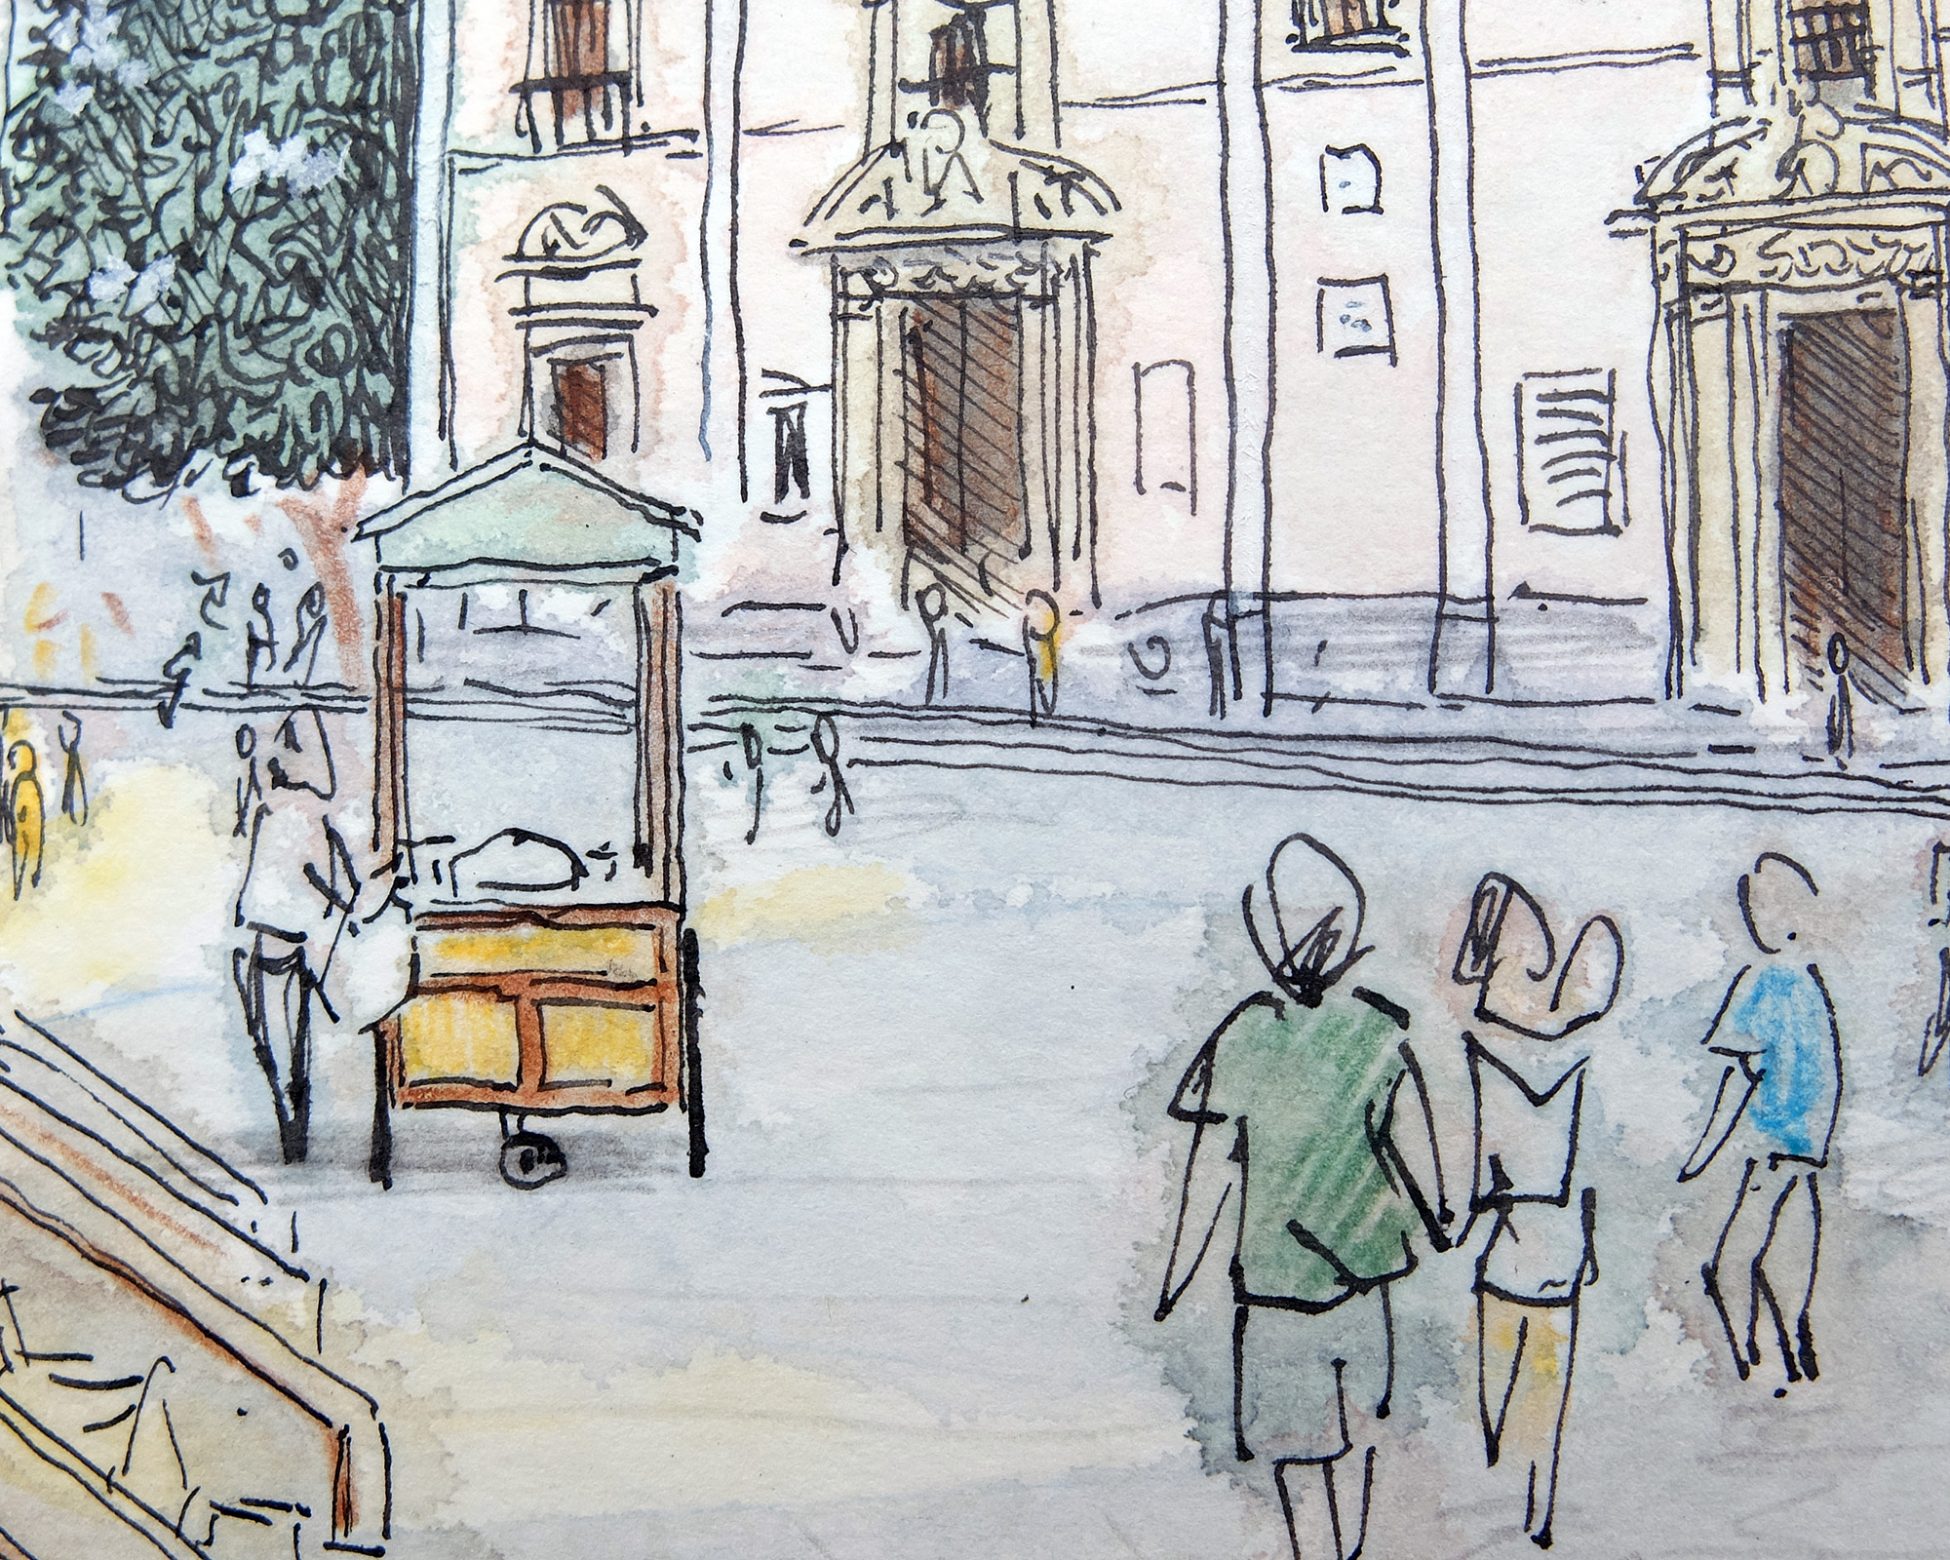 Detalle de un dibujo en acuarela calle del barrio del carme. Ilustracion, urban sketchers